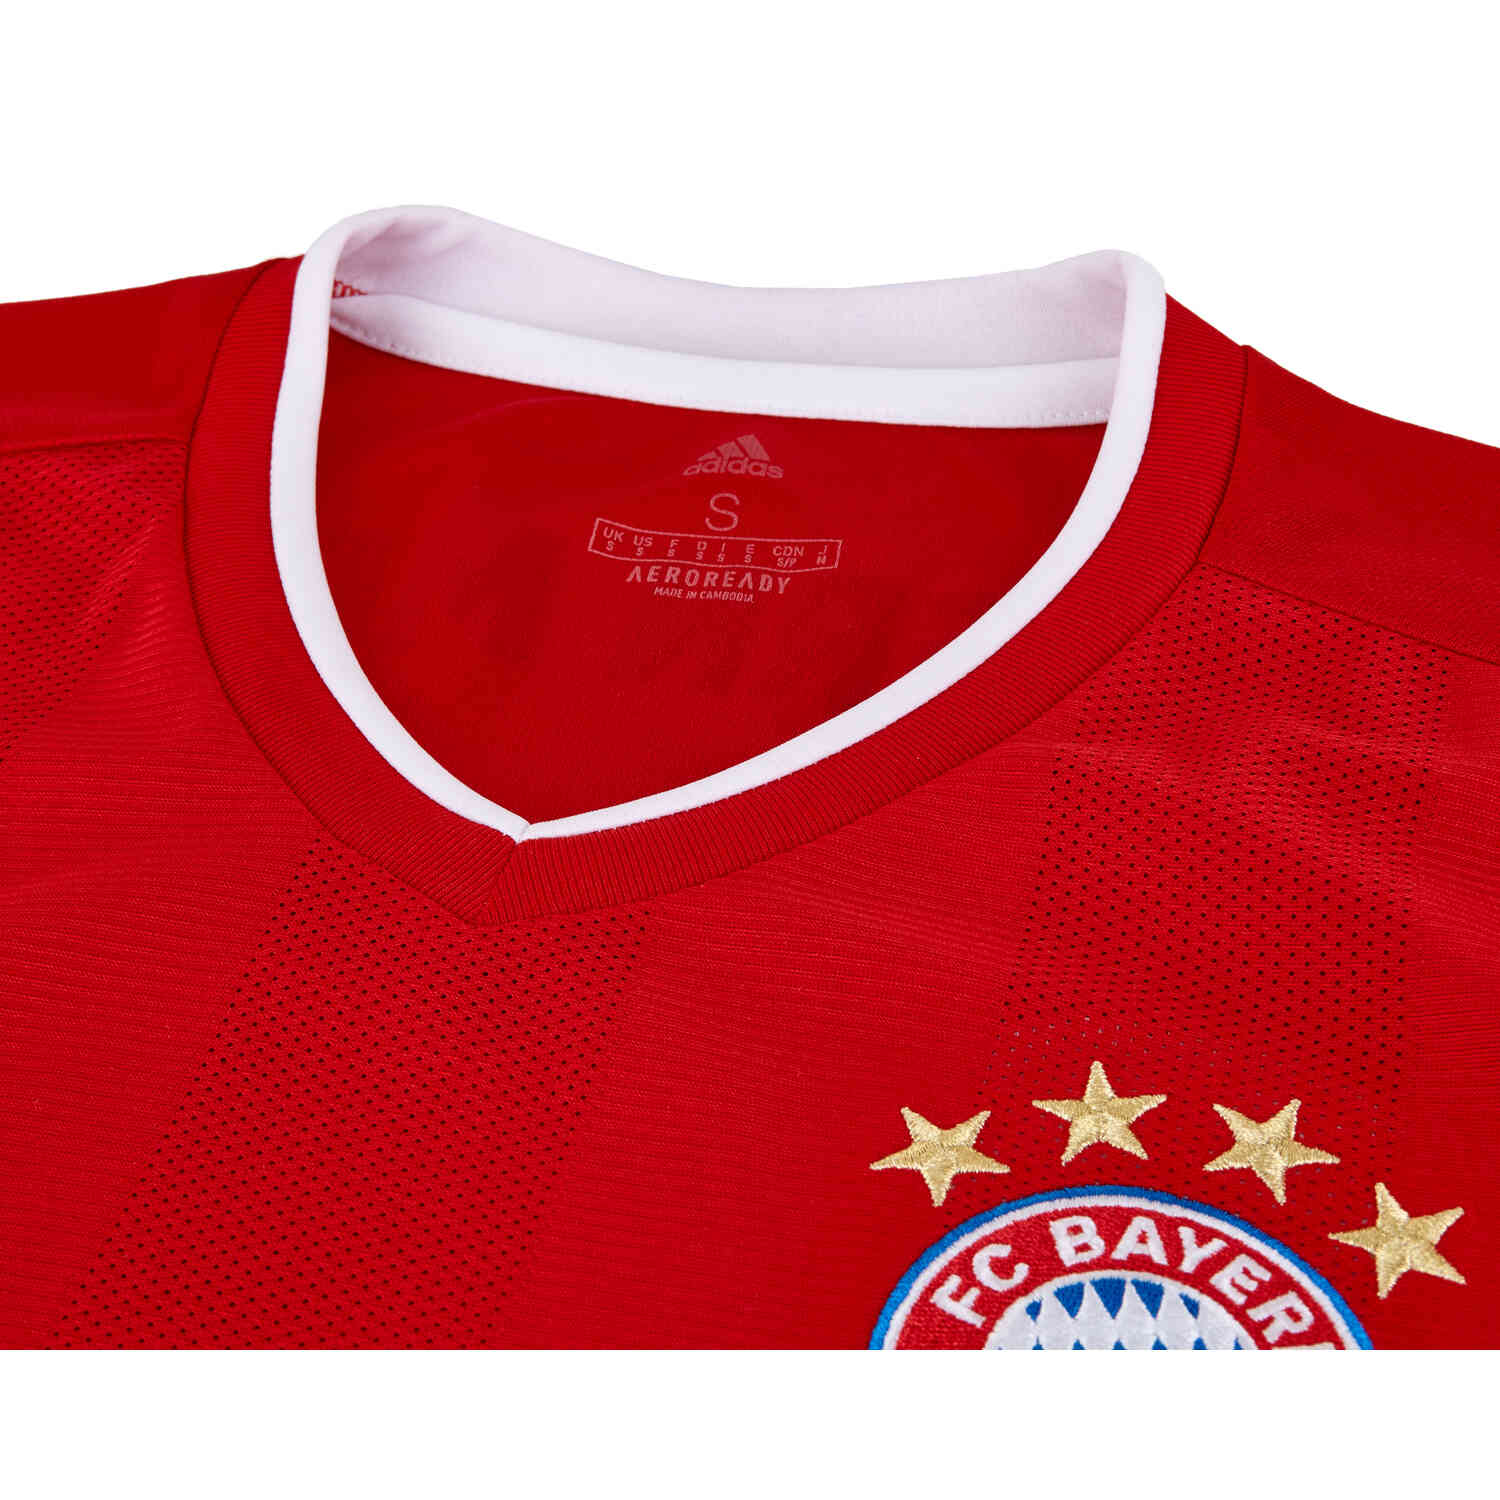 Bayern Munich Jersey 2020-2021 Home Medium Mens Football Shirt FR8358 Adidas